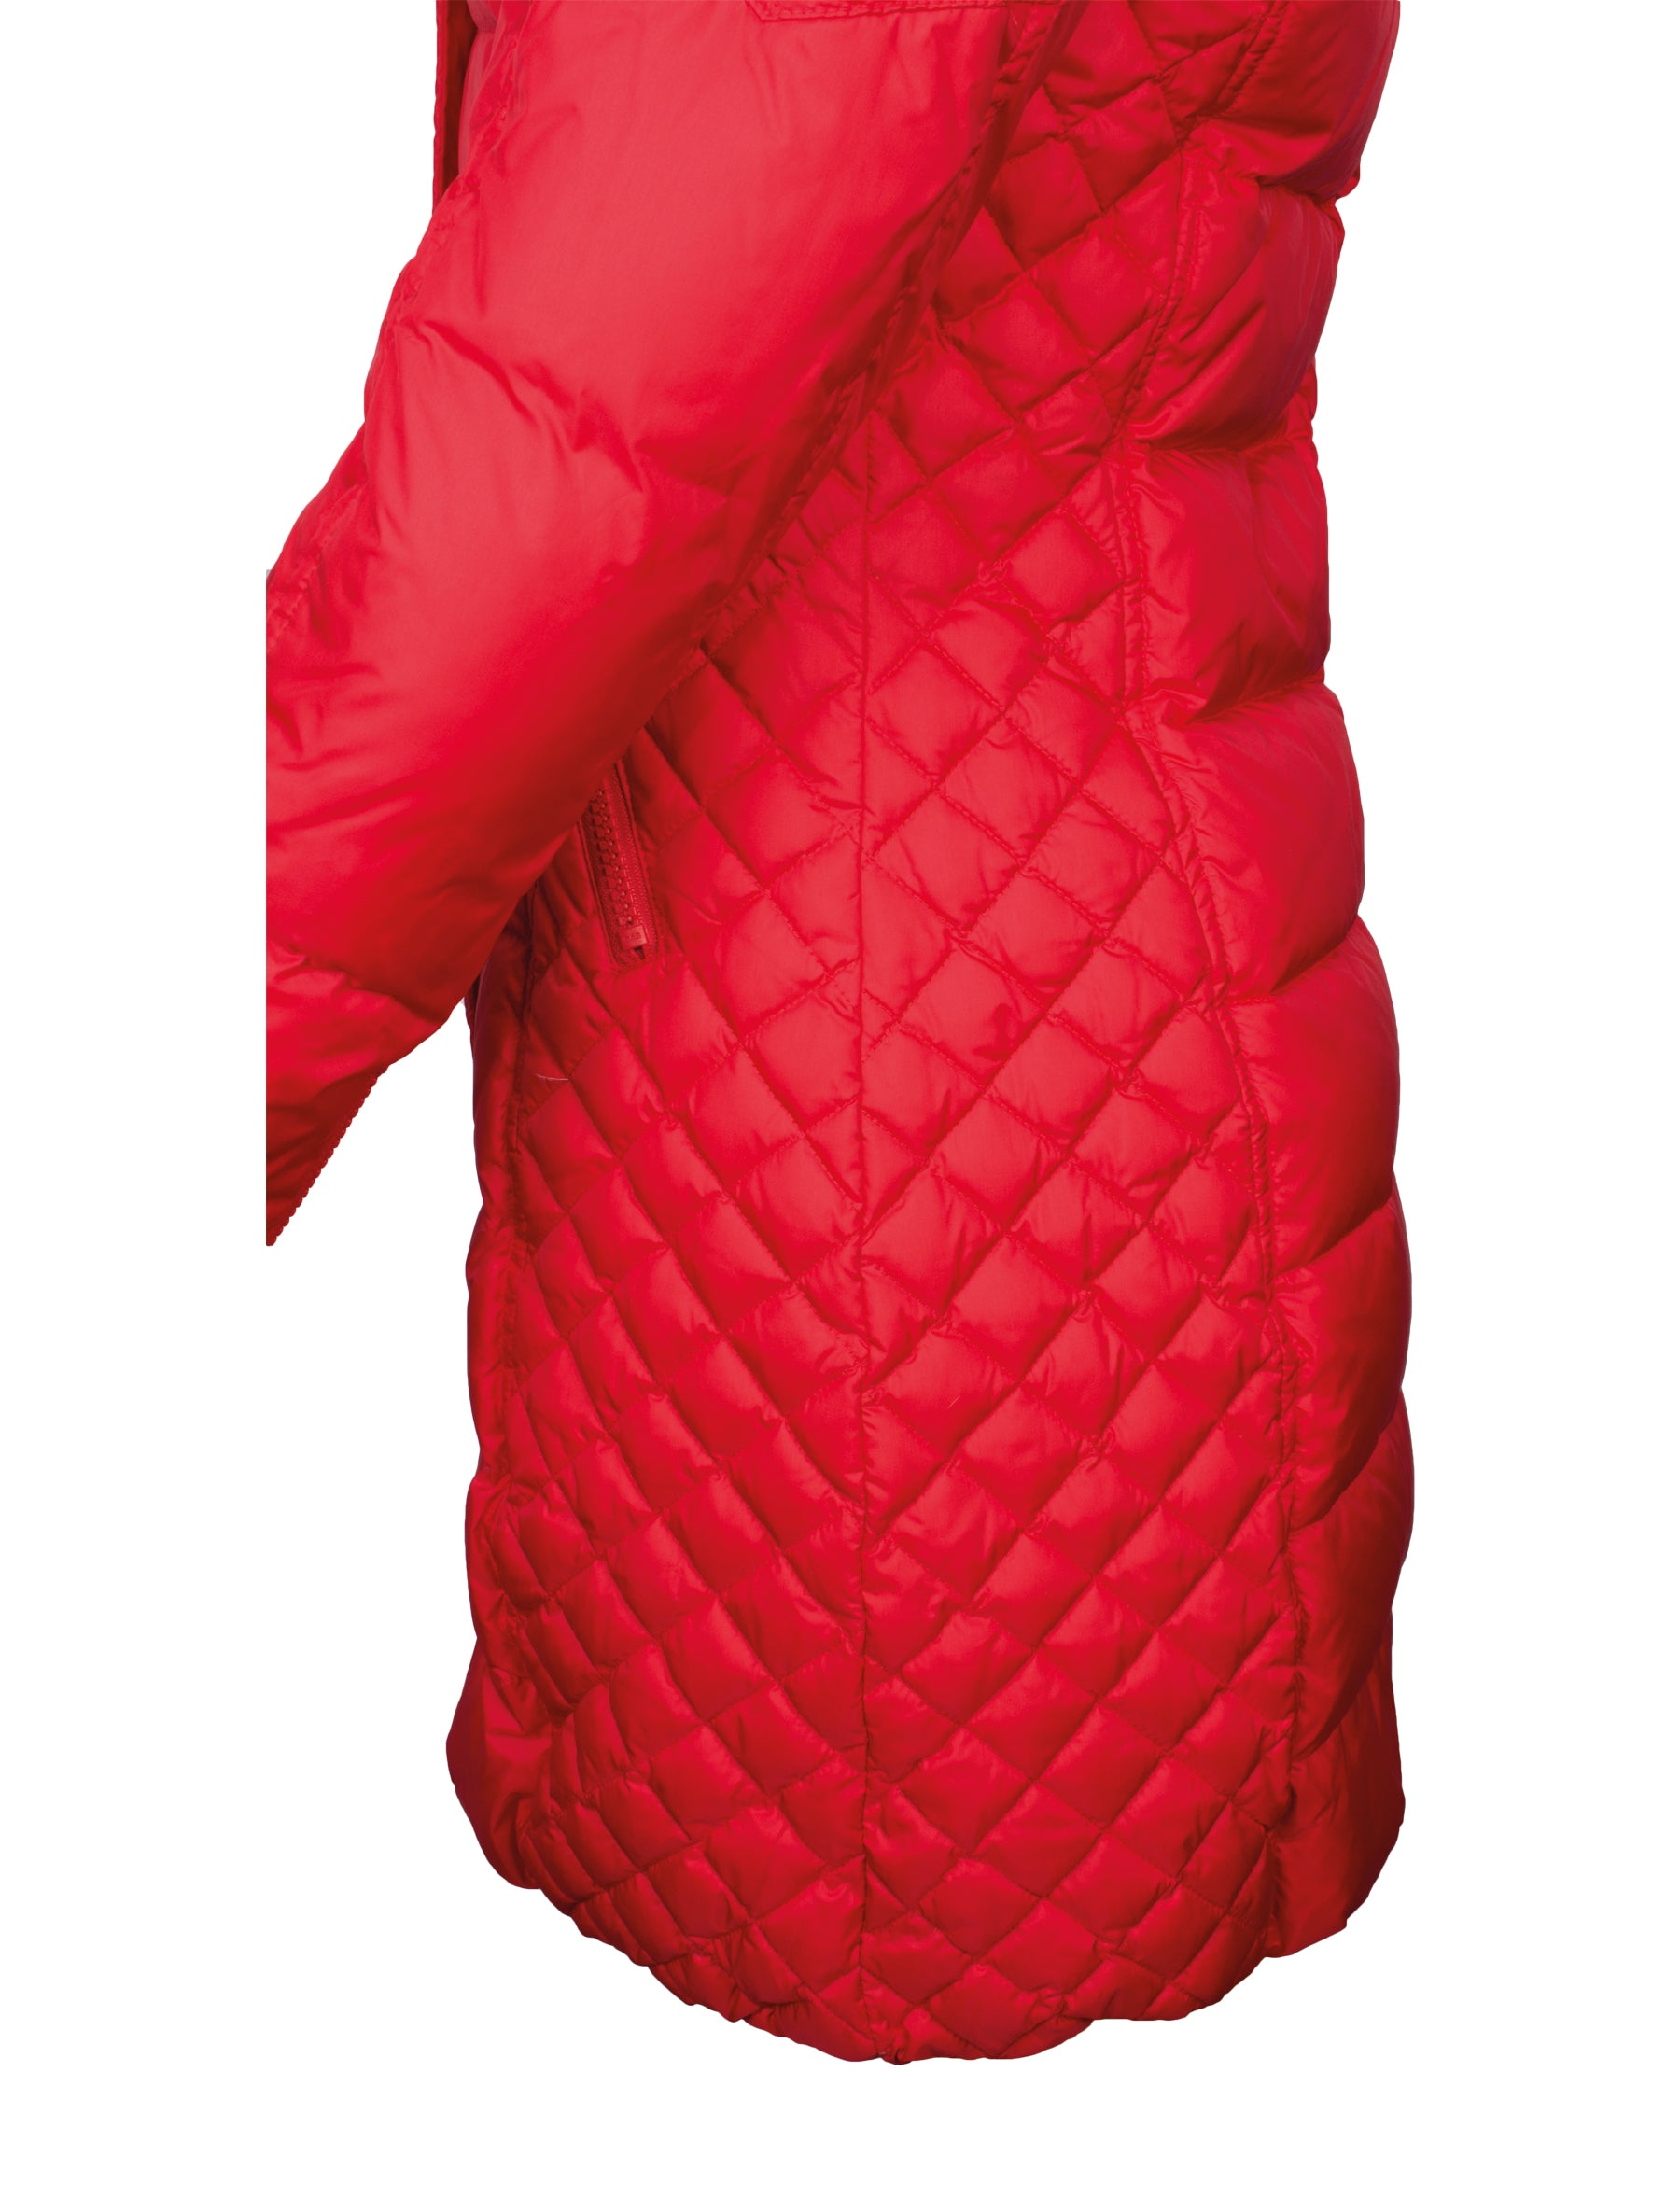 Damen Daunenmantel mit abnehmbarer Echtfell Kapuze - Beam in bright red/natural